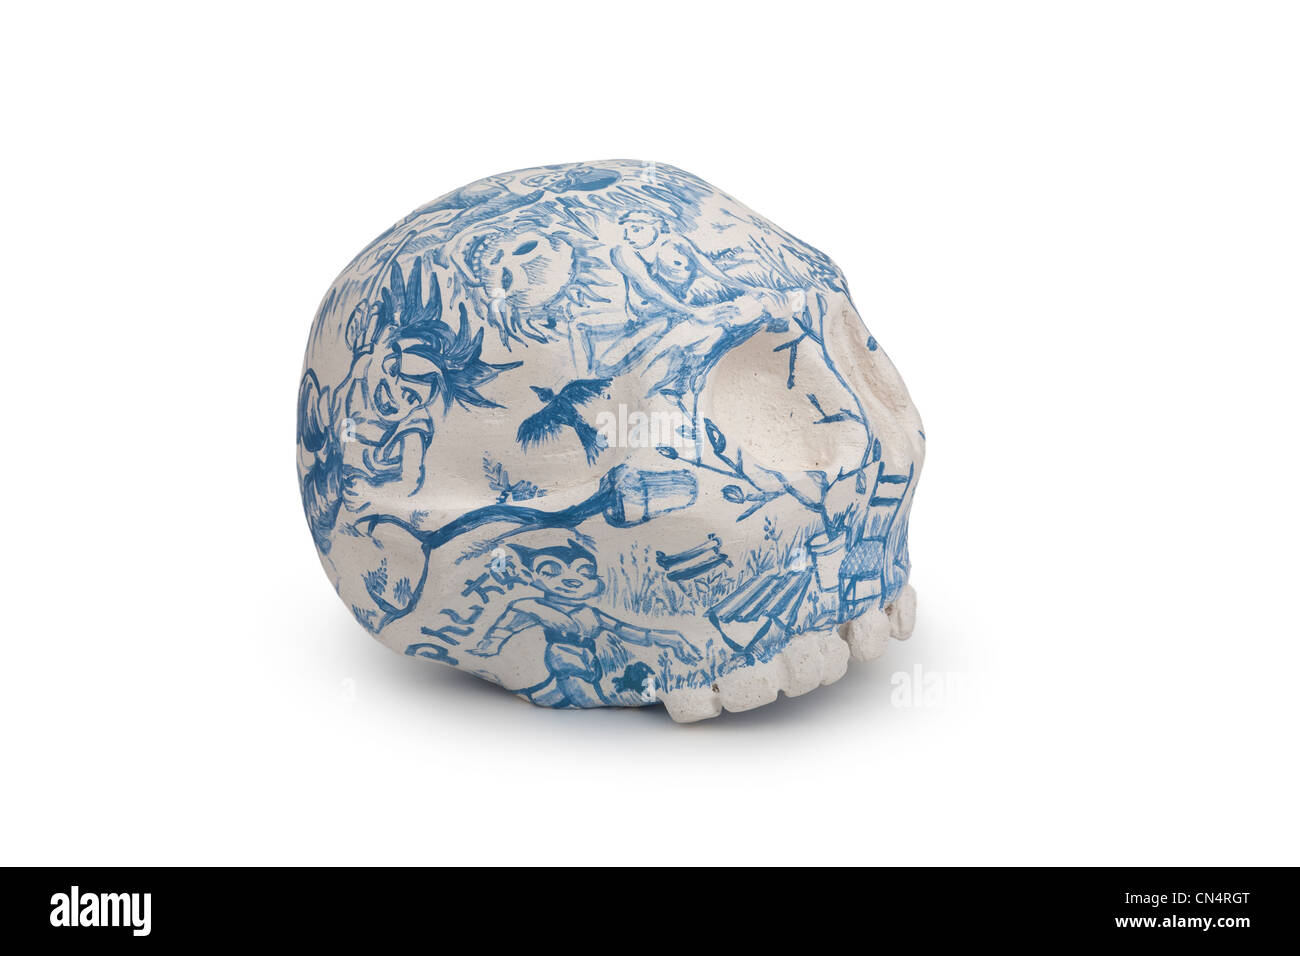 A human skull shaped sculpture of Jacques GALLON, ceramist. Sculpture en forme de crâne humain du céramiste Jacques GALLON. Stock Photo